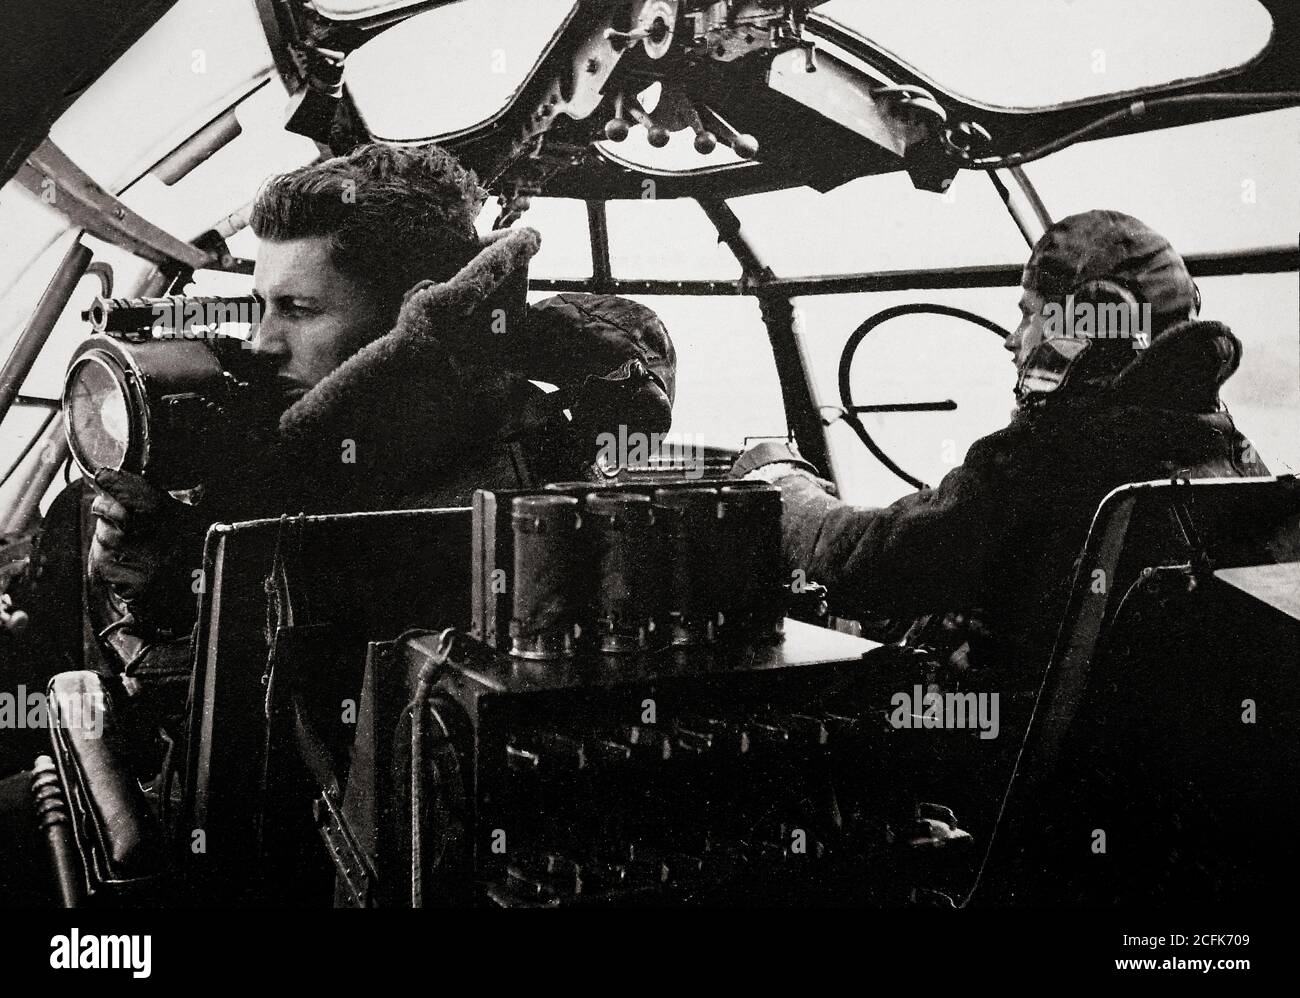 Il navigatore in una breve nave volante Sunderland segnalando con una lampada Aldis ad un convoglio. Durante la seconda guerra mondiale, con il miglioramento delle misure britanniche contro i sottomarini, iniziarono a infliggere anche perdite, con i tedeschi che si reputarono soprannominati il Sunderland il "Flying Porcupine". Foto Stock